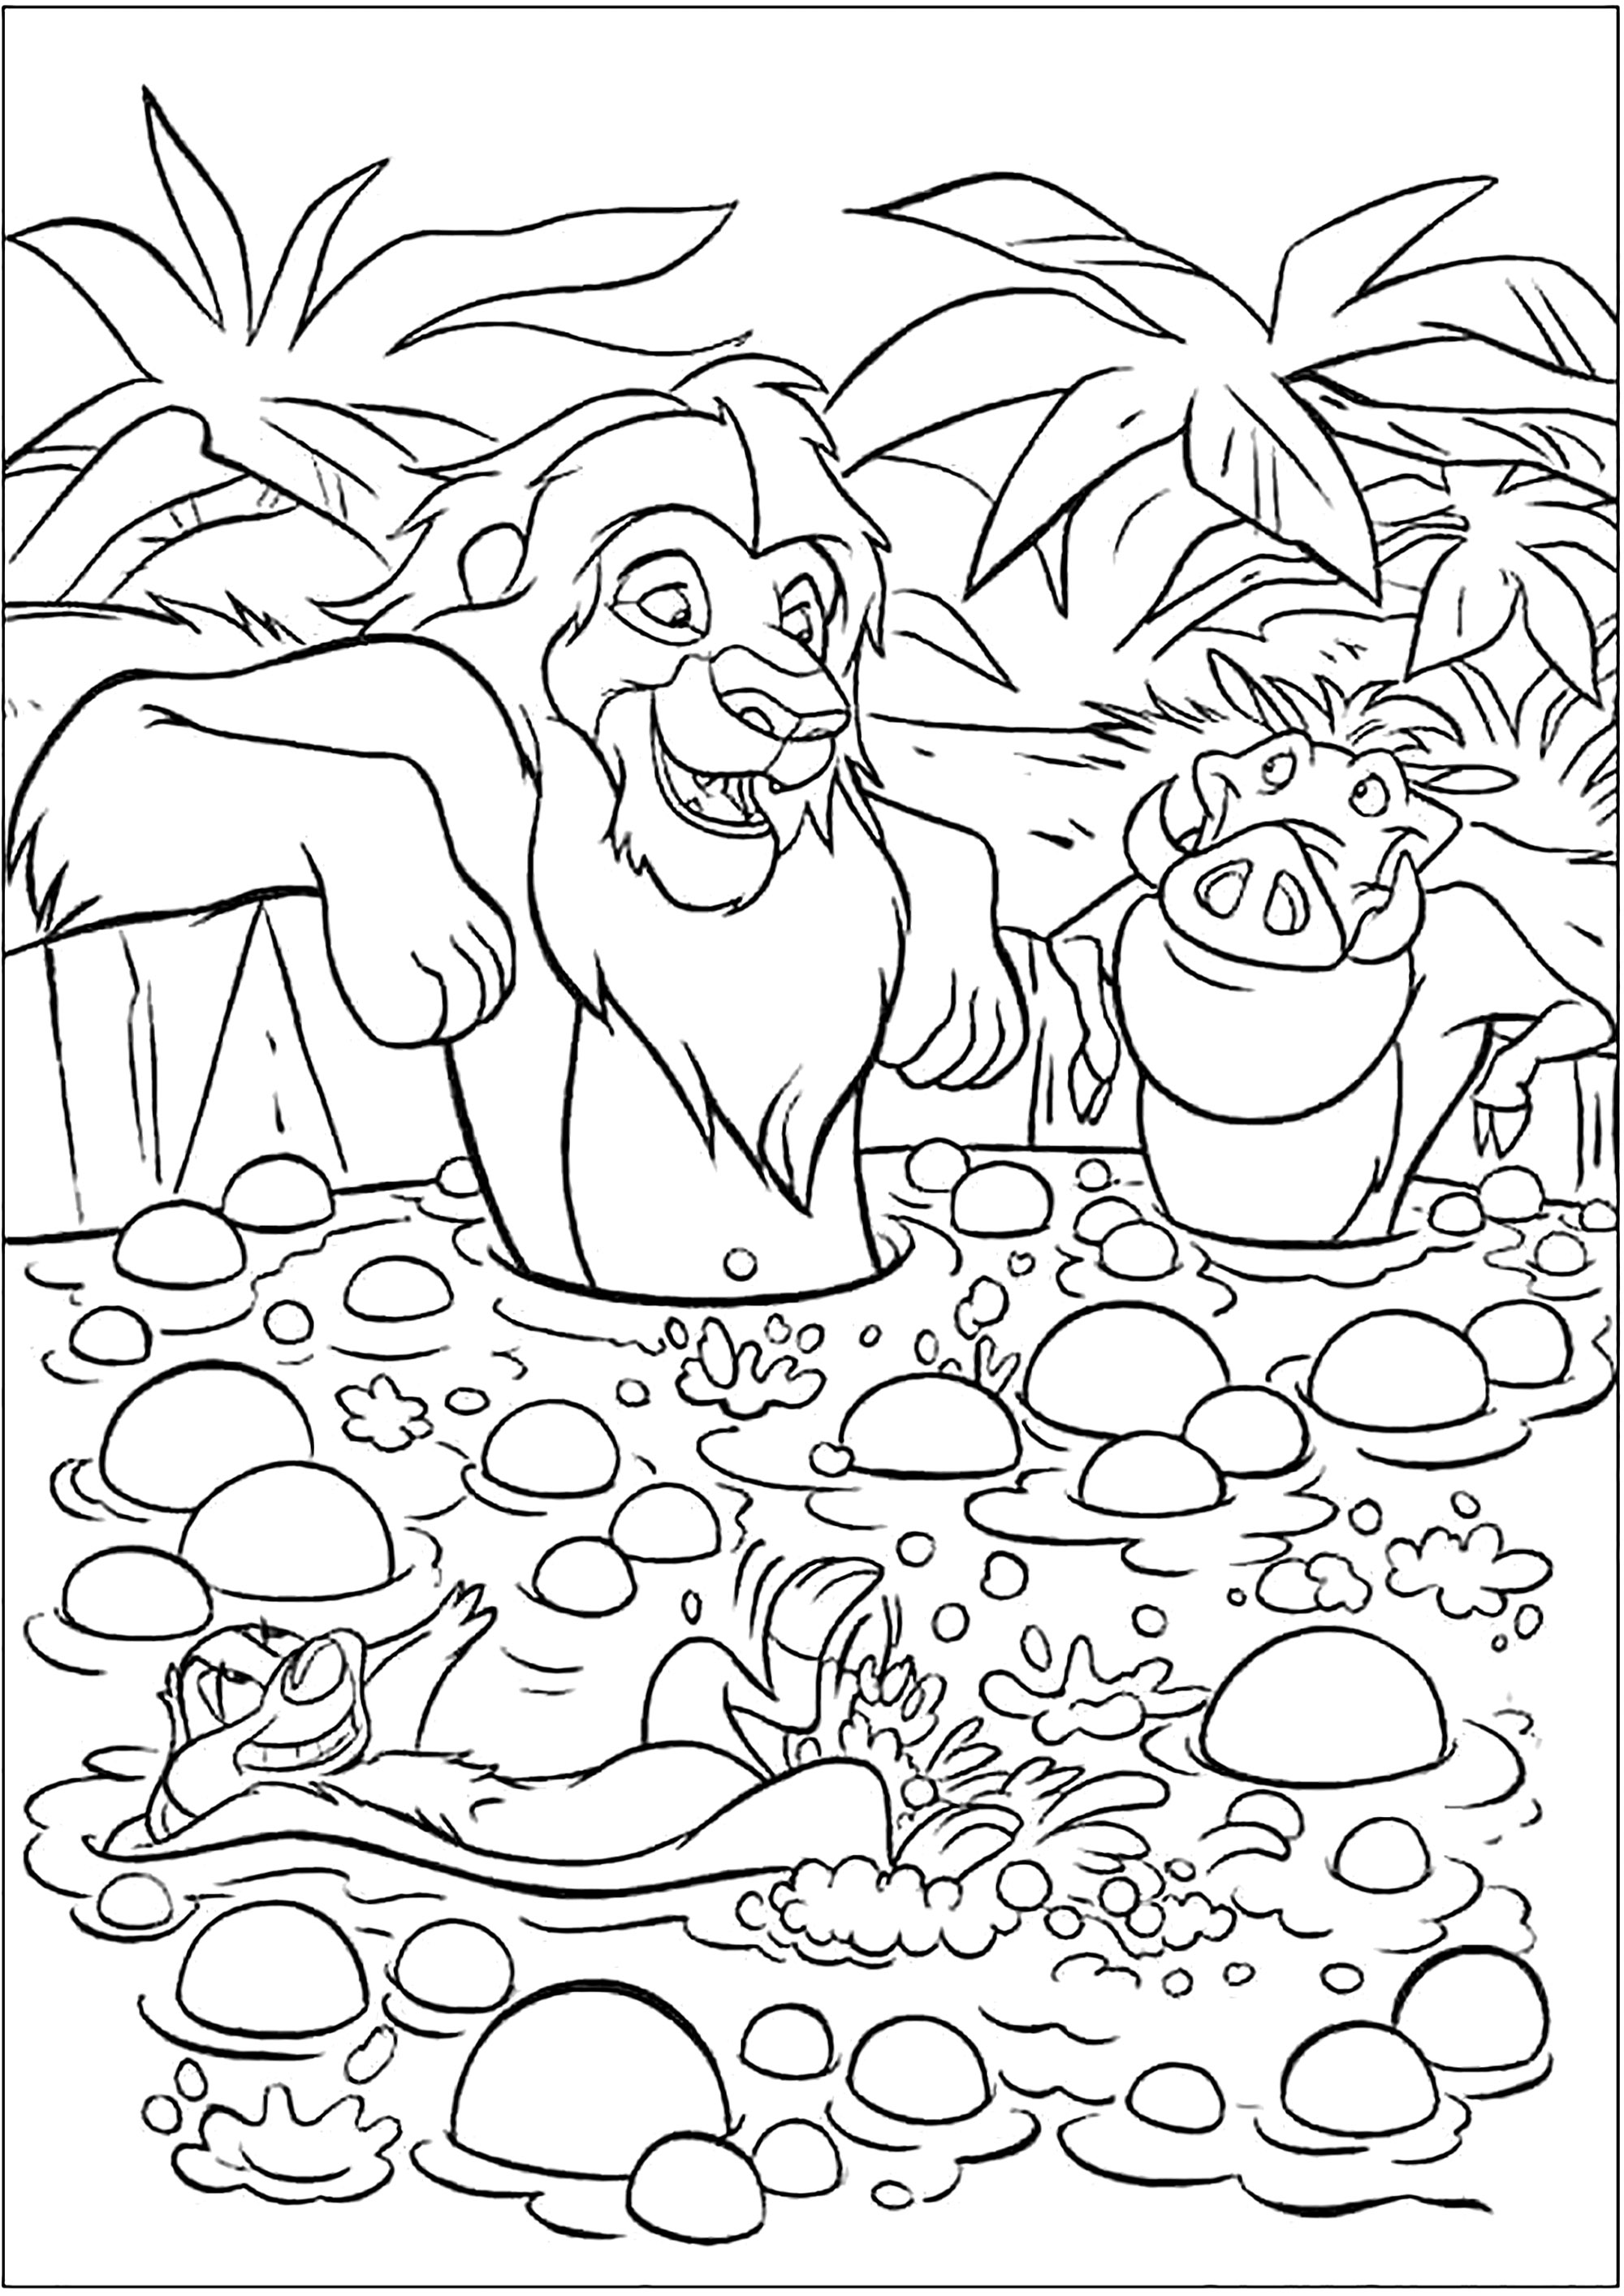 Baño de barro para los tres amigos Simba, Timón y Pumbaa